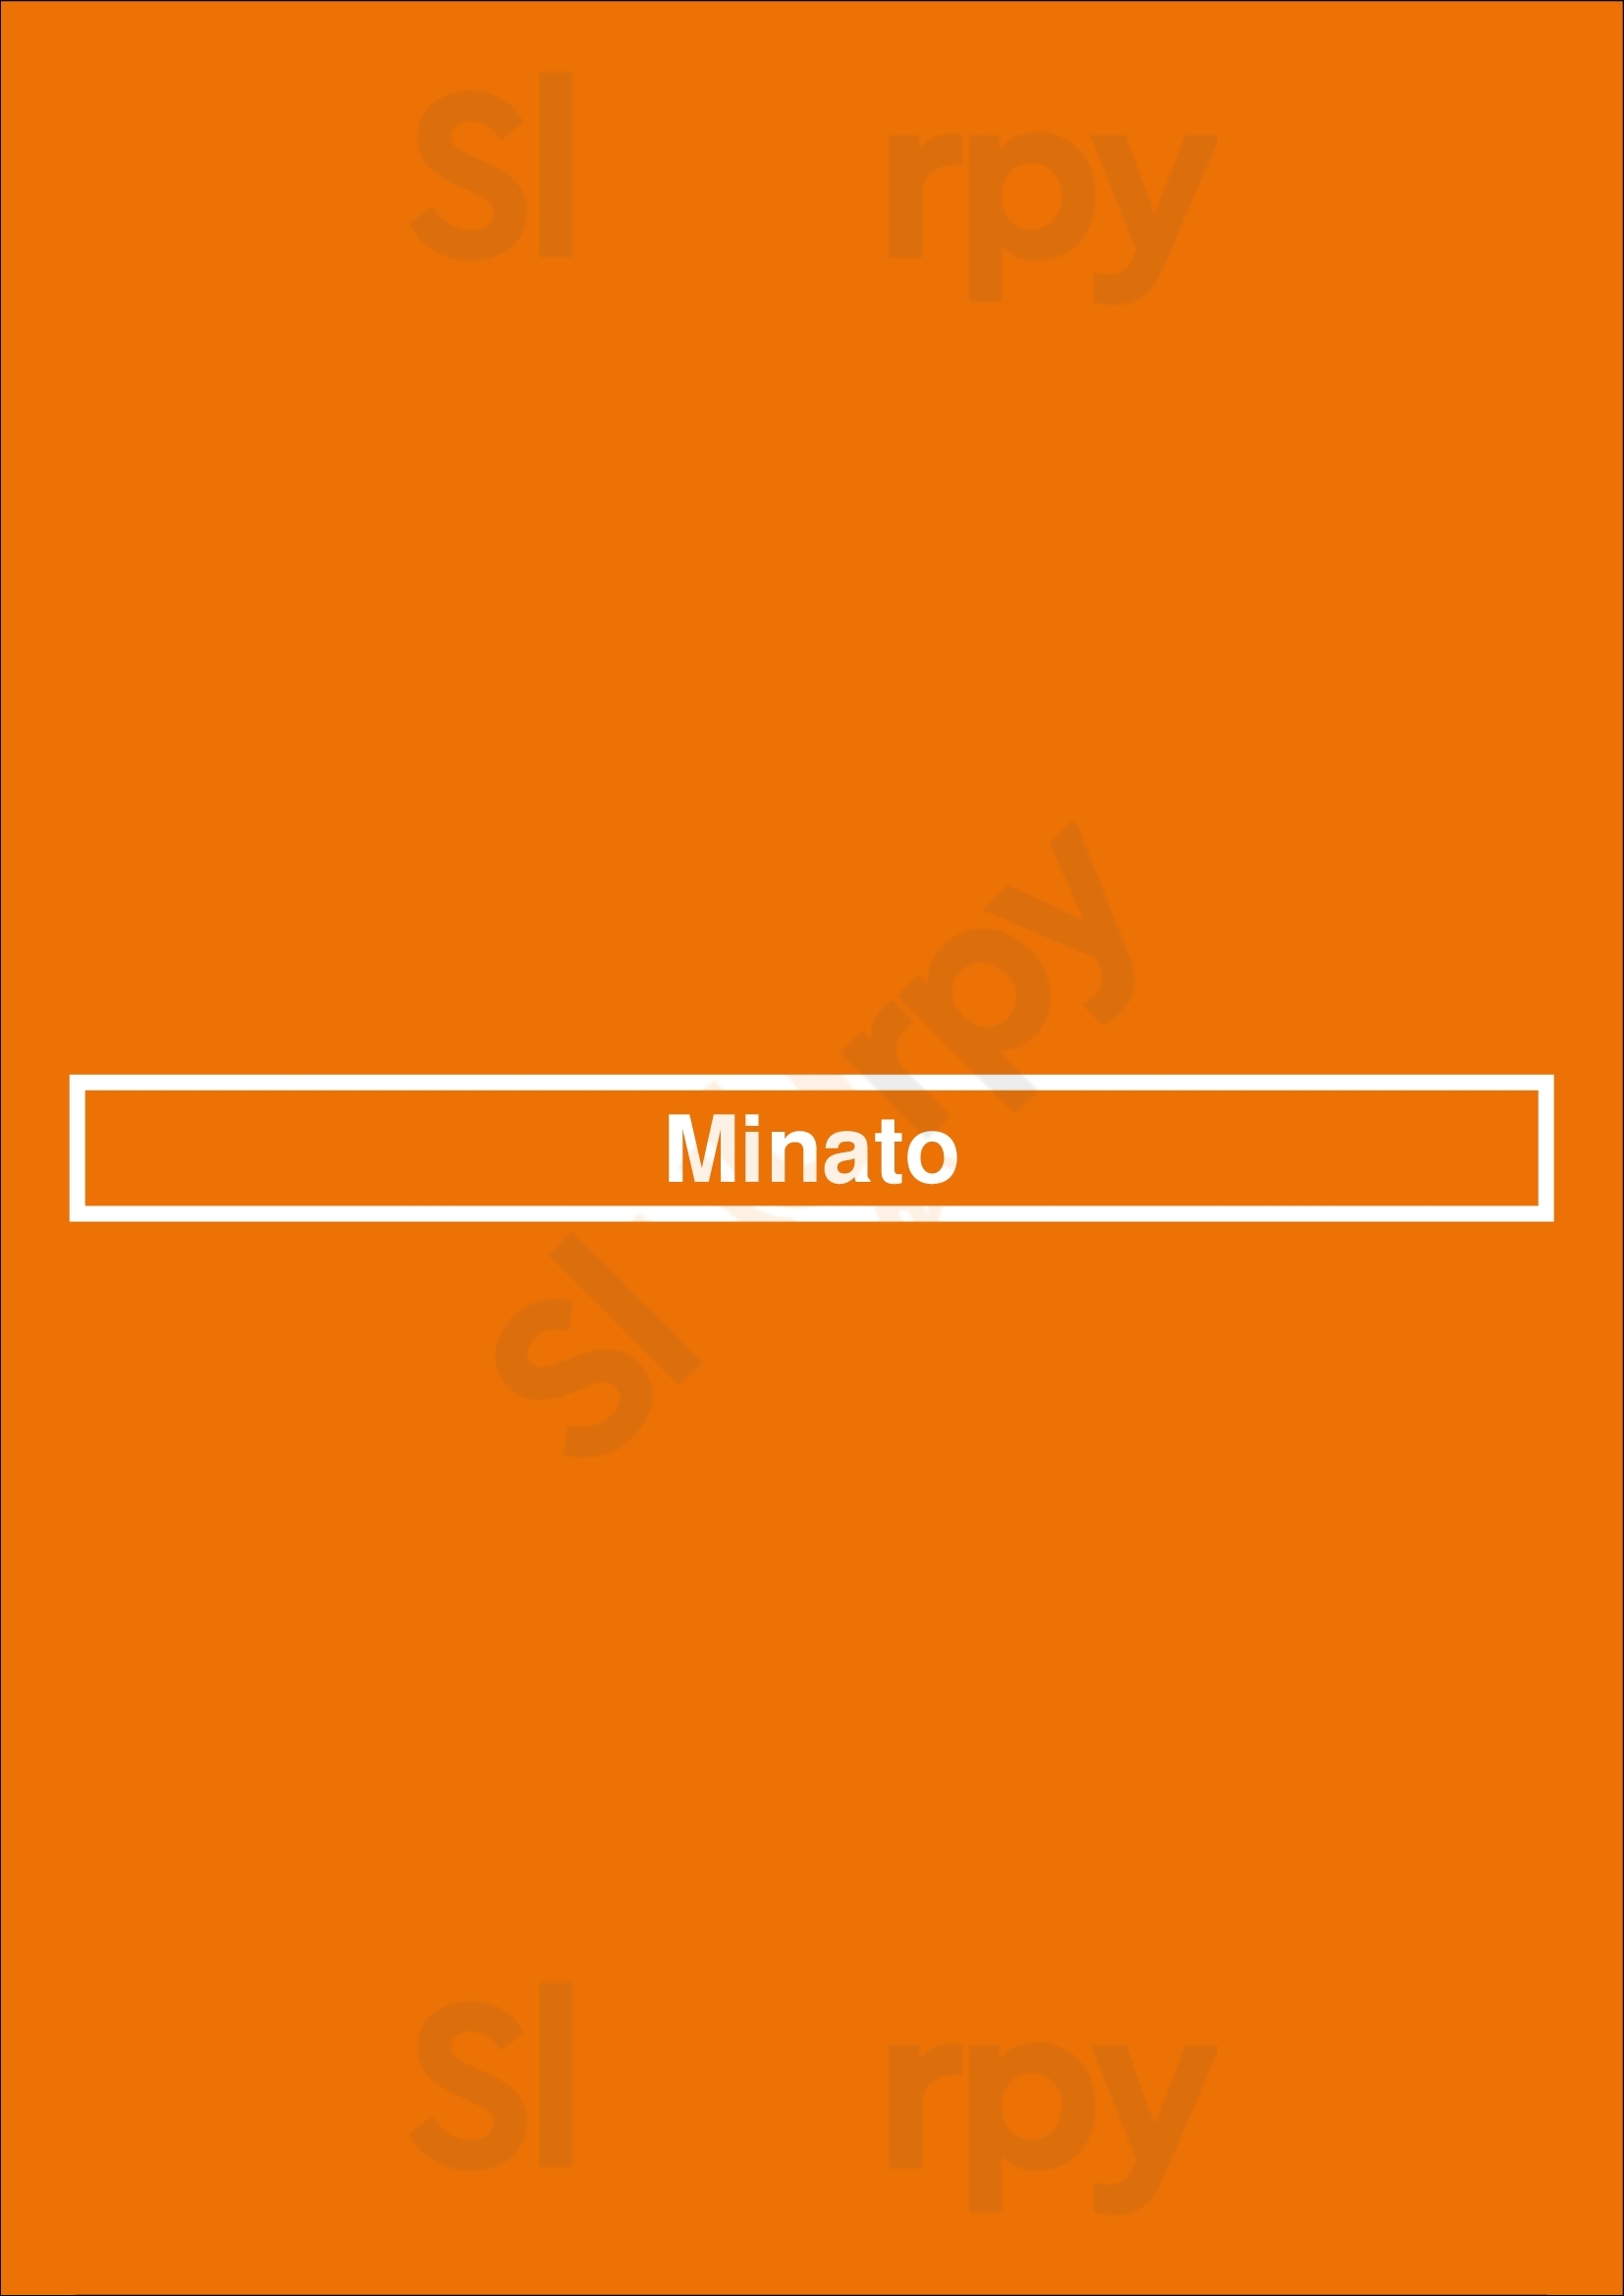 Minato Anvers Menu - 1